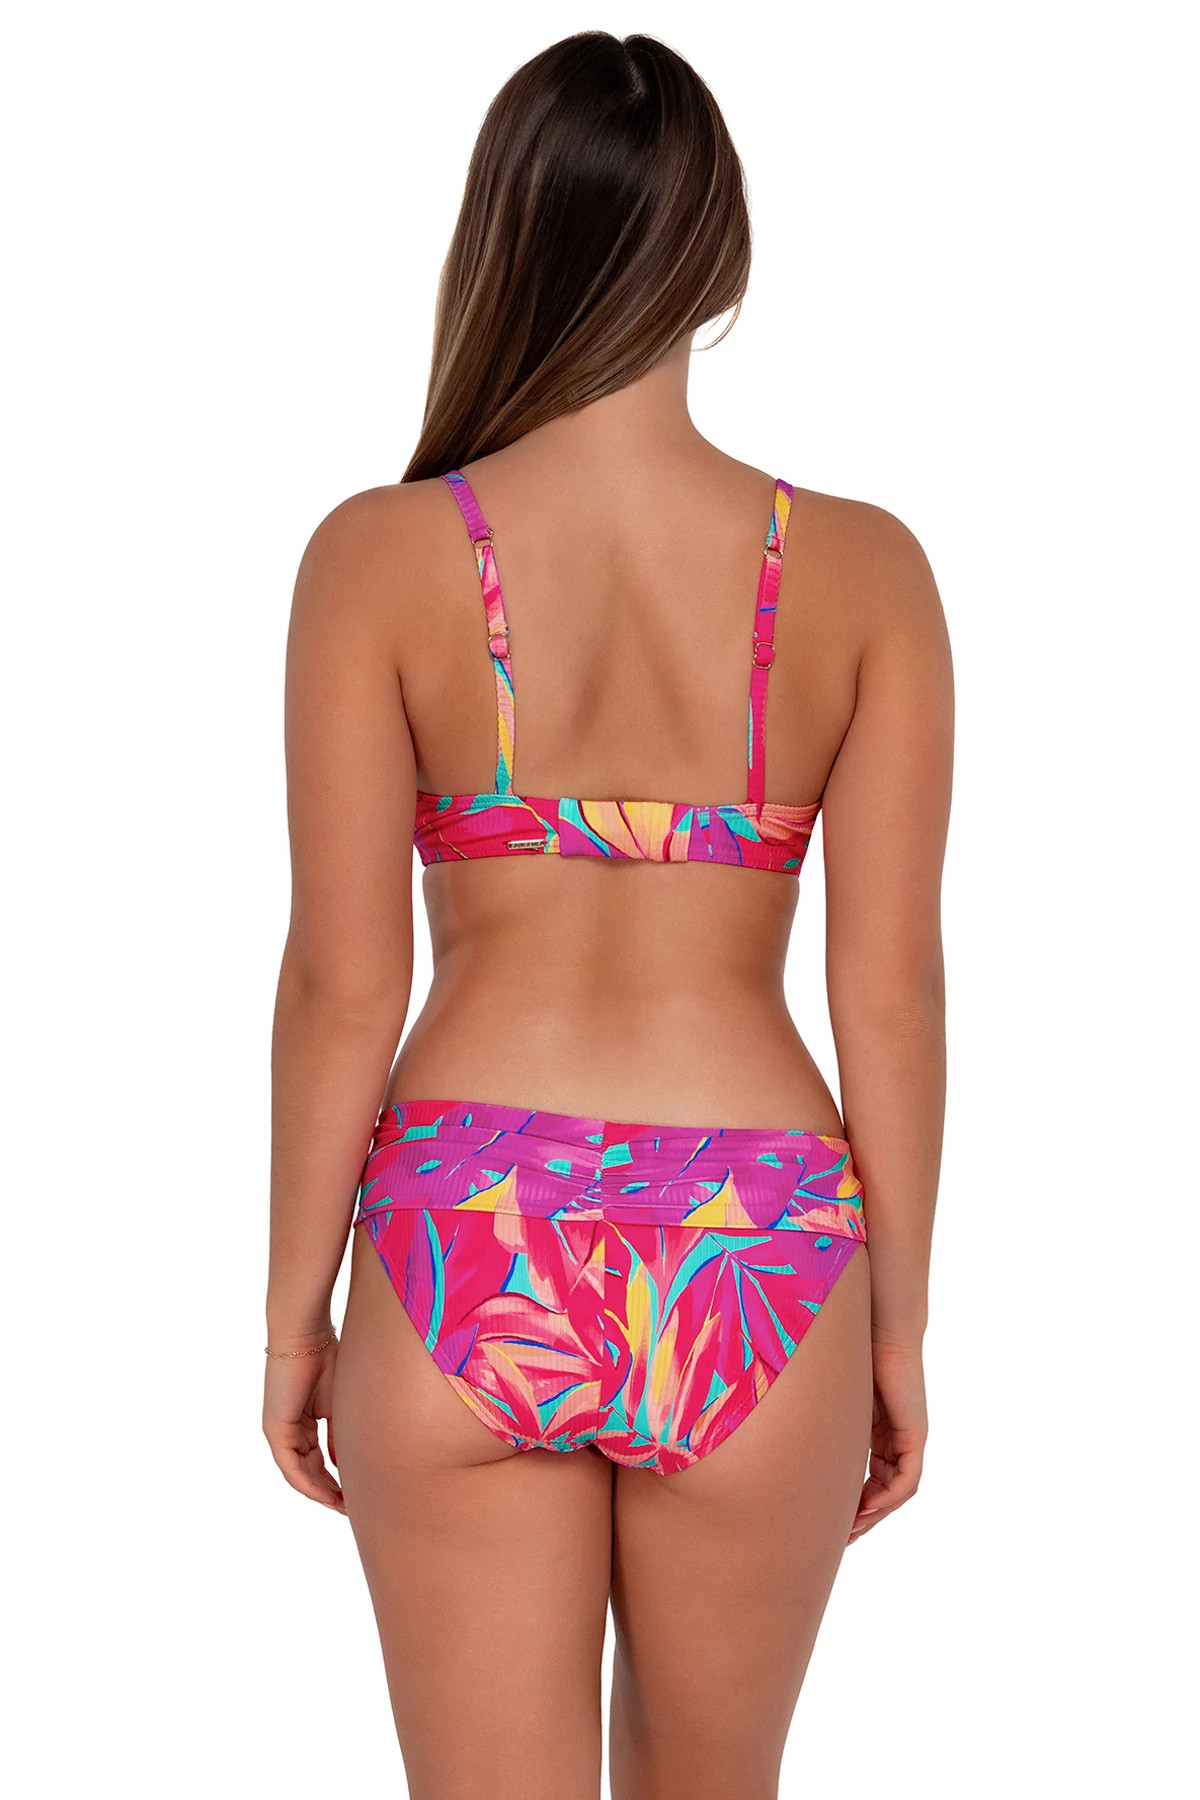 OASIS SANDBAR RIB Kauai Keyhole Underwire Bikini Top (D+ Cup) image number 3